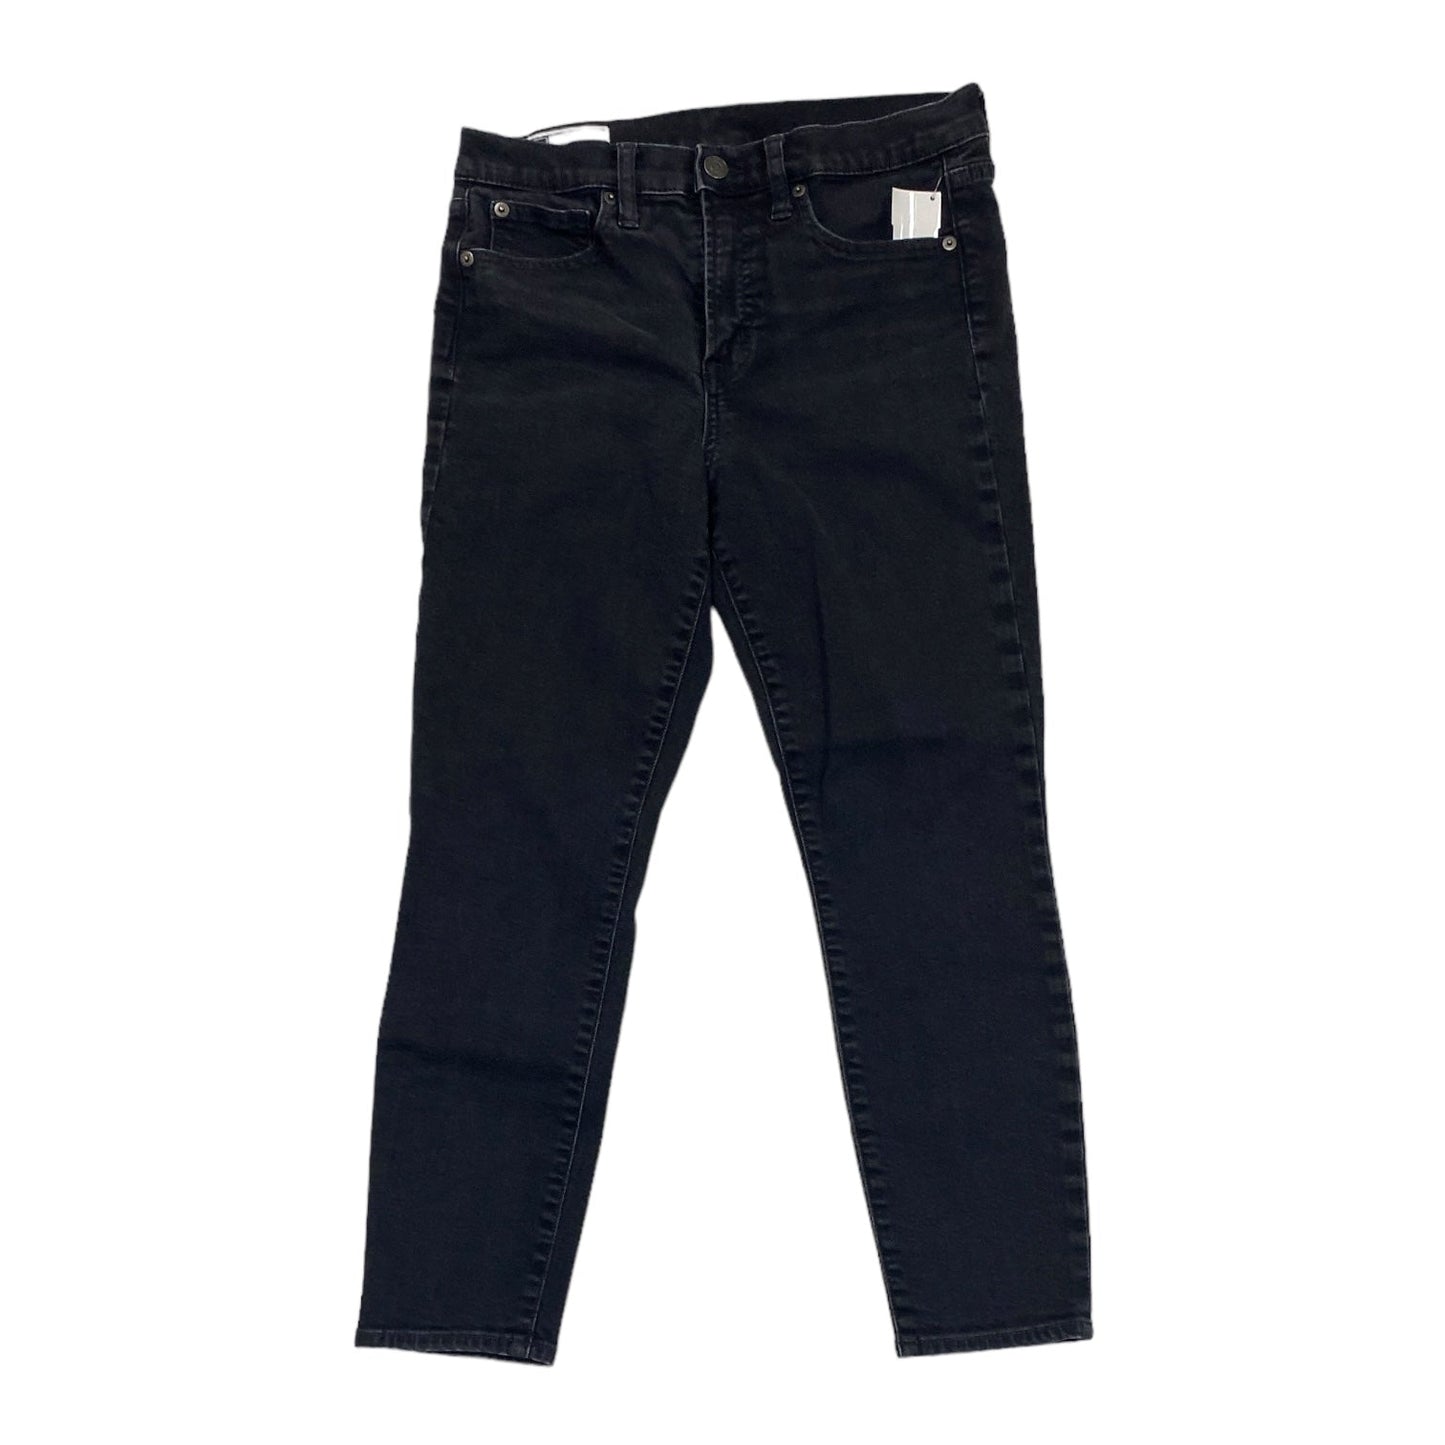 Black Denim Jeans Skinny Gap, Size 6petite